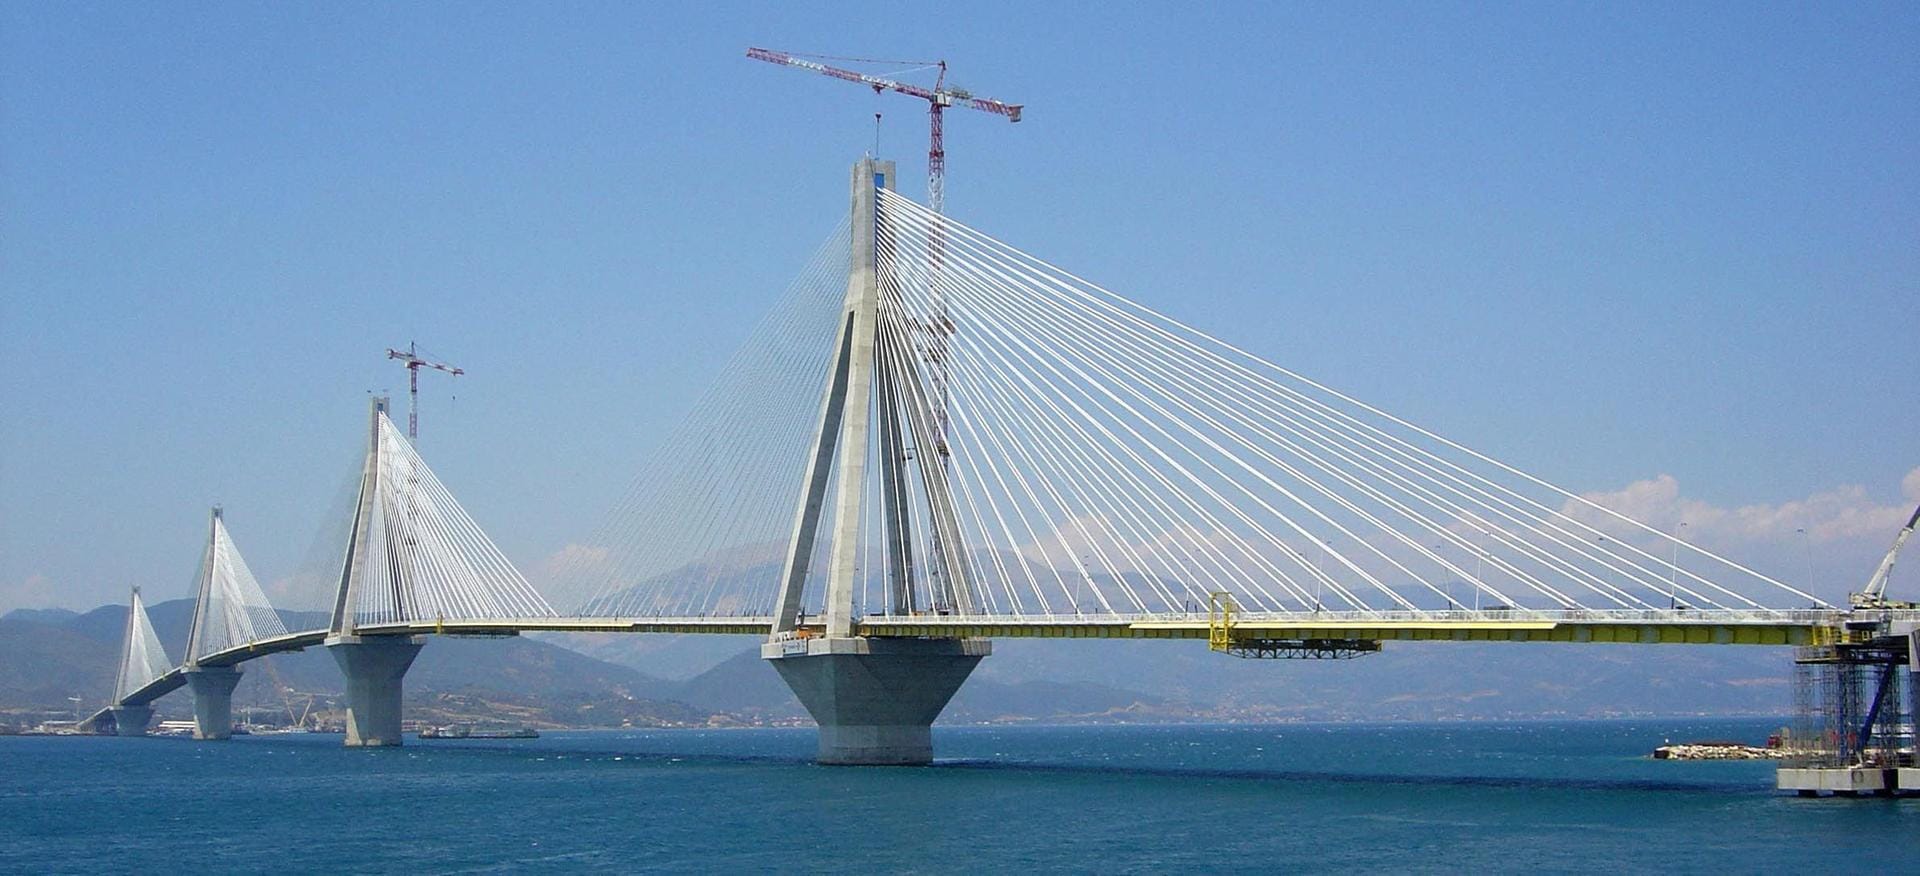 Eine Brücke über den Golf von Korinth – die Harilaos-Trikoupis-Brücke